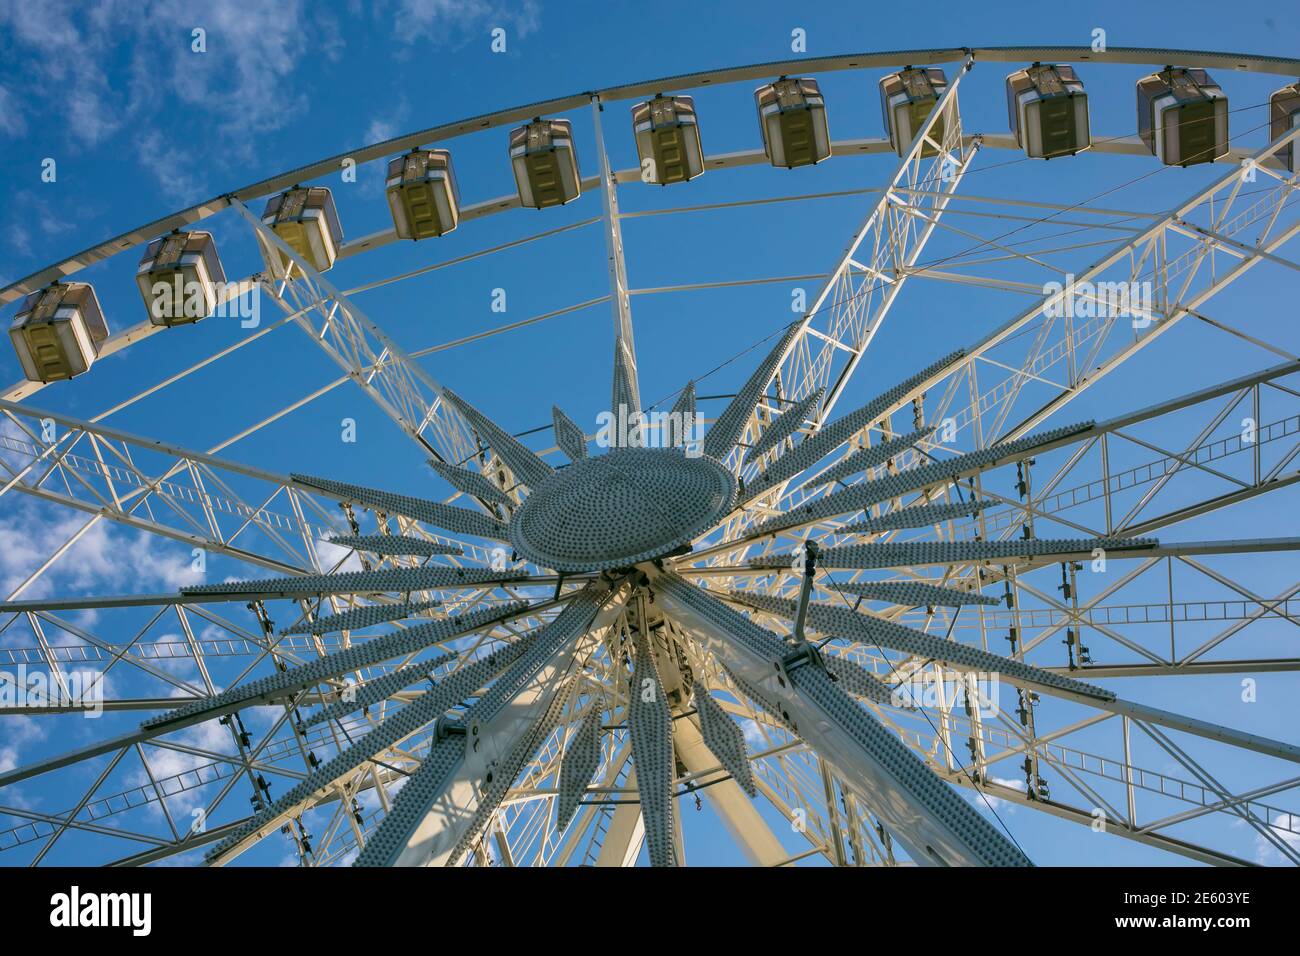 Ferris wheel from below Stock Photo